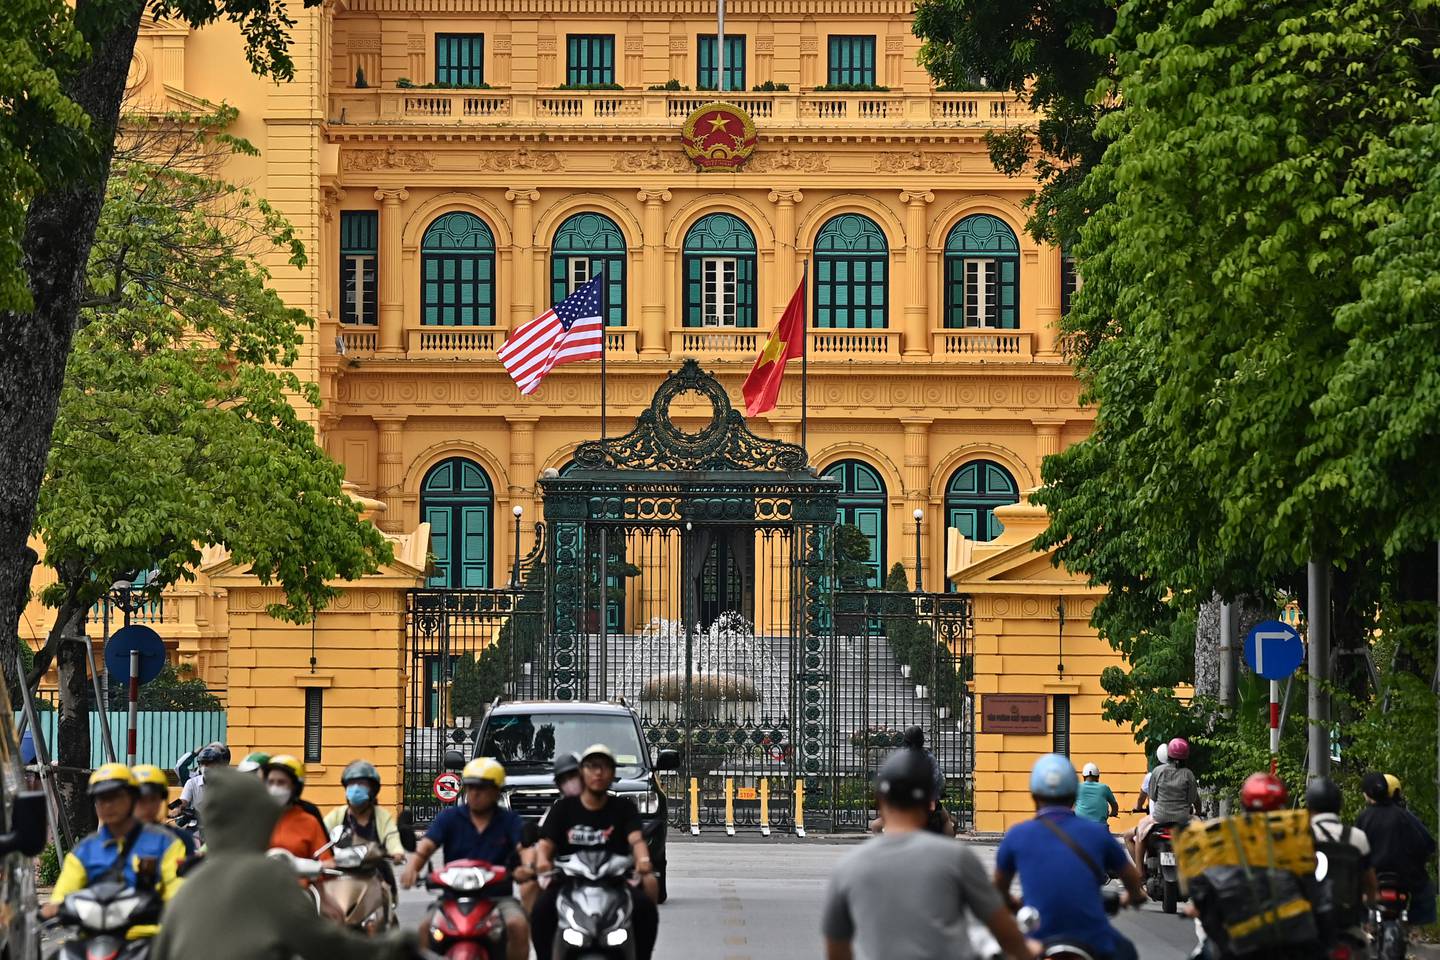 La bandera nacional de Estados Unidos ondeó junto a la bandera de Vietnam en el Palacio Presidencial de Hanoi este 9 de setiembre, un día antes de la visita del presidente estadounidense Joe Biden a Vietnam. Fotografía: